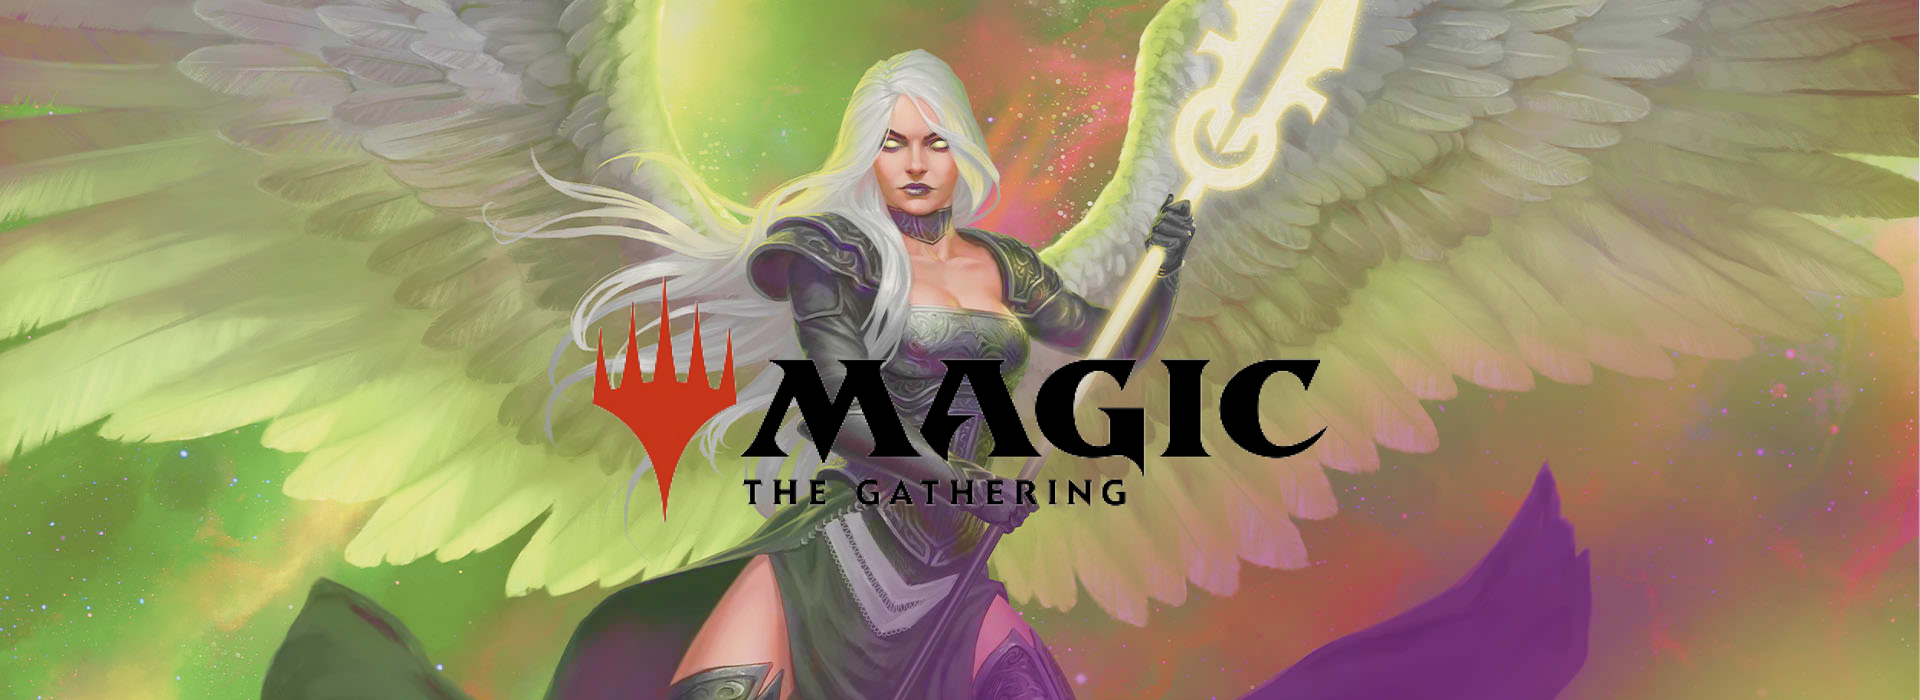 Magic : The Gathering, le jeu de cartes à collectionner indémodable